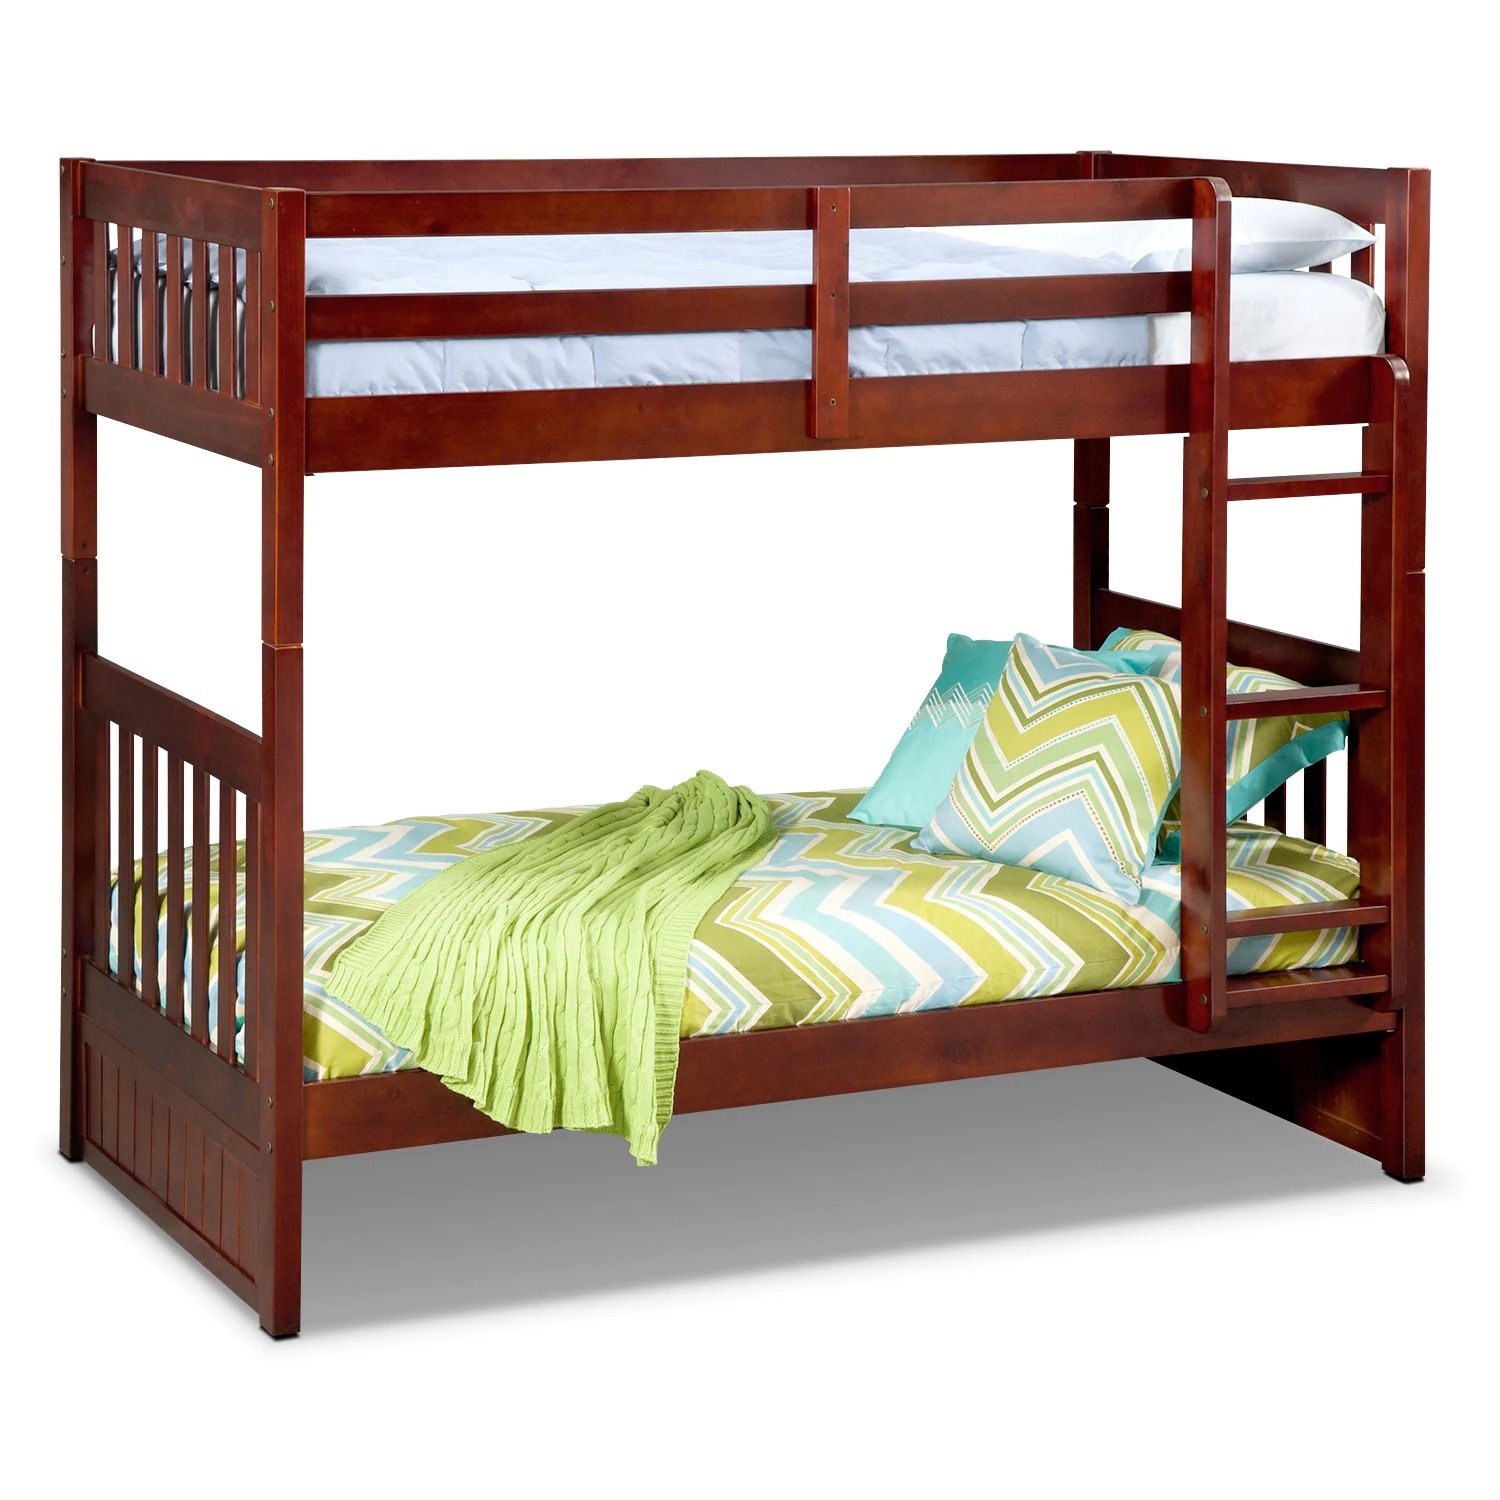 Giường tầng gỗ giá rẻ cho bé ở Hà Nội